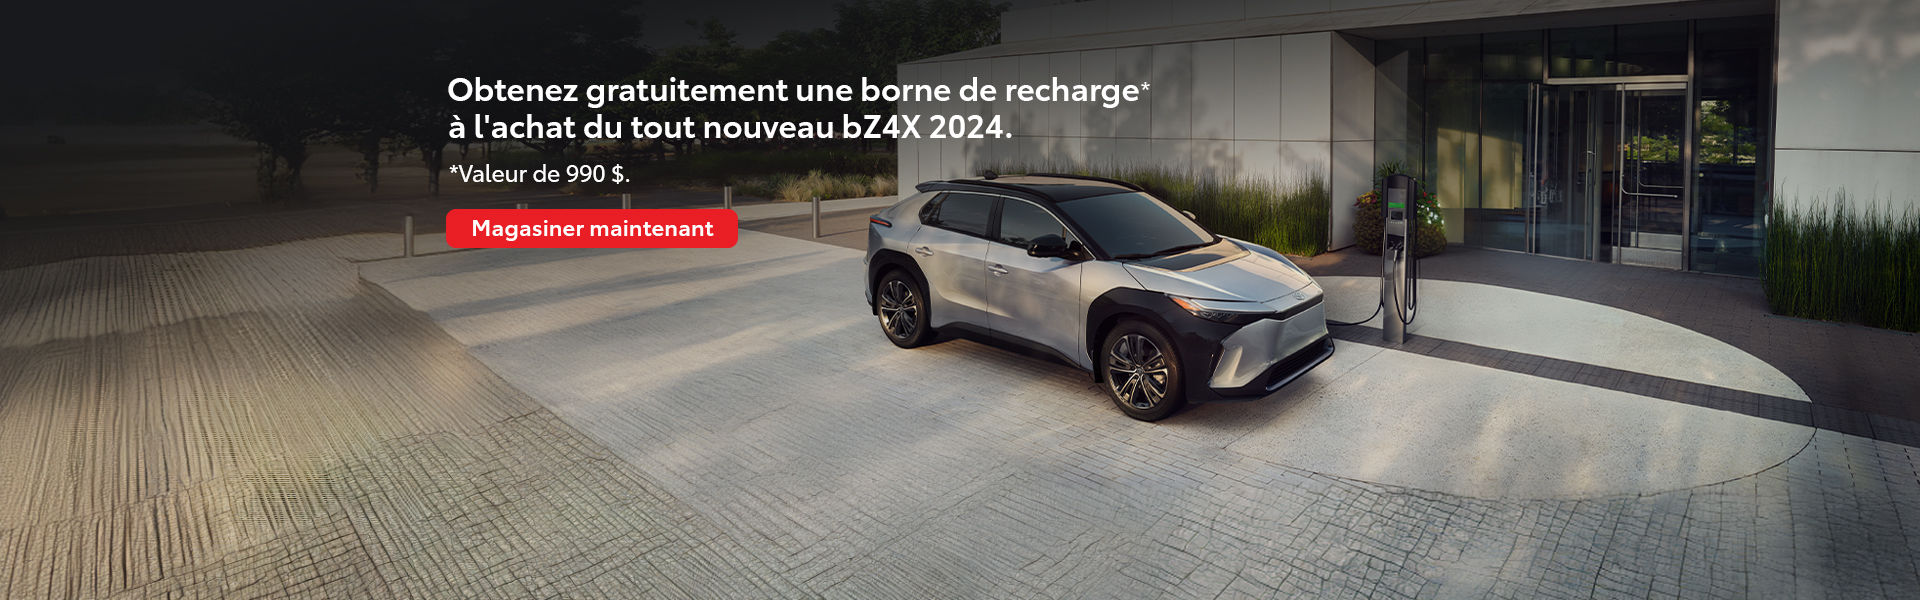 Obtenez gratuitement une borne de recharge* à l'achat du tout  nouveau bZ4X 2024.